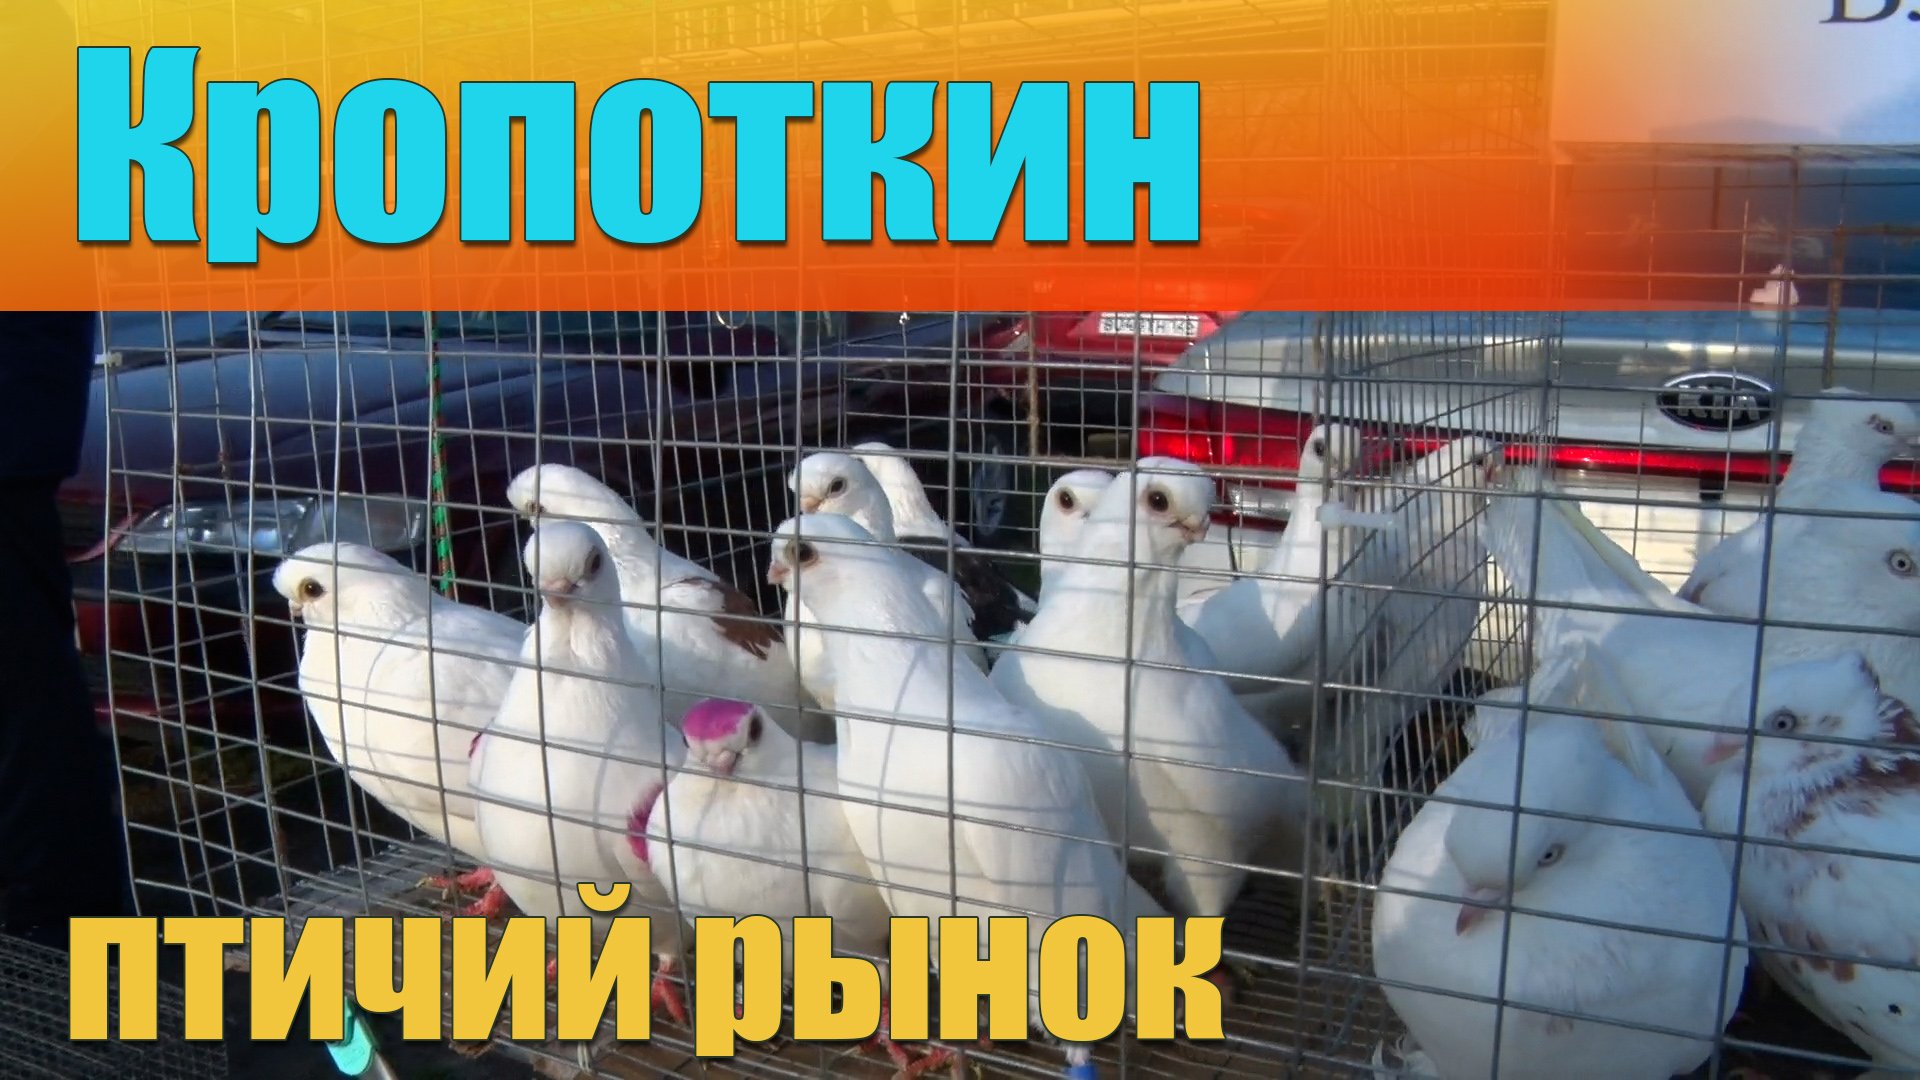 Кропоткин выставка голубей. Голуби на птичьем рынке. Птиц ий рынок в крапоткине. Москва птичий рынок голуби. Ярмарка голубей в Кропоткине.